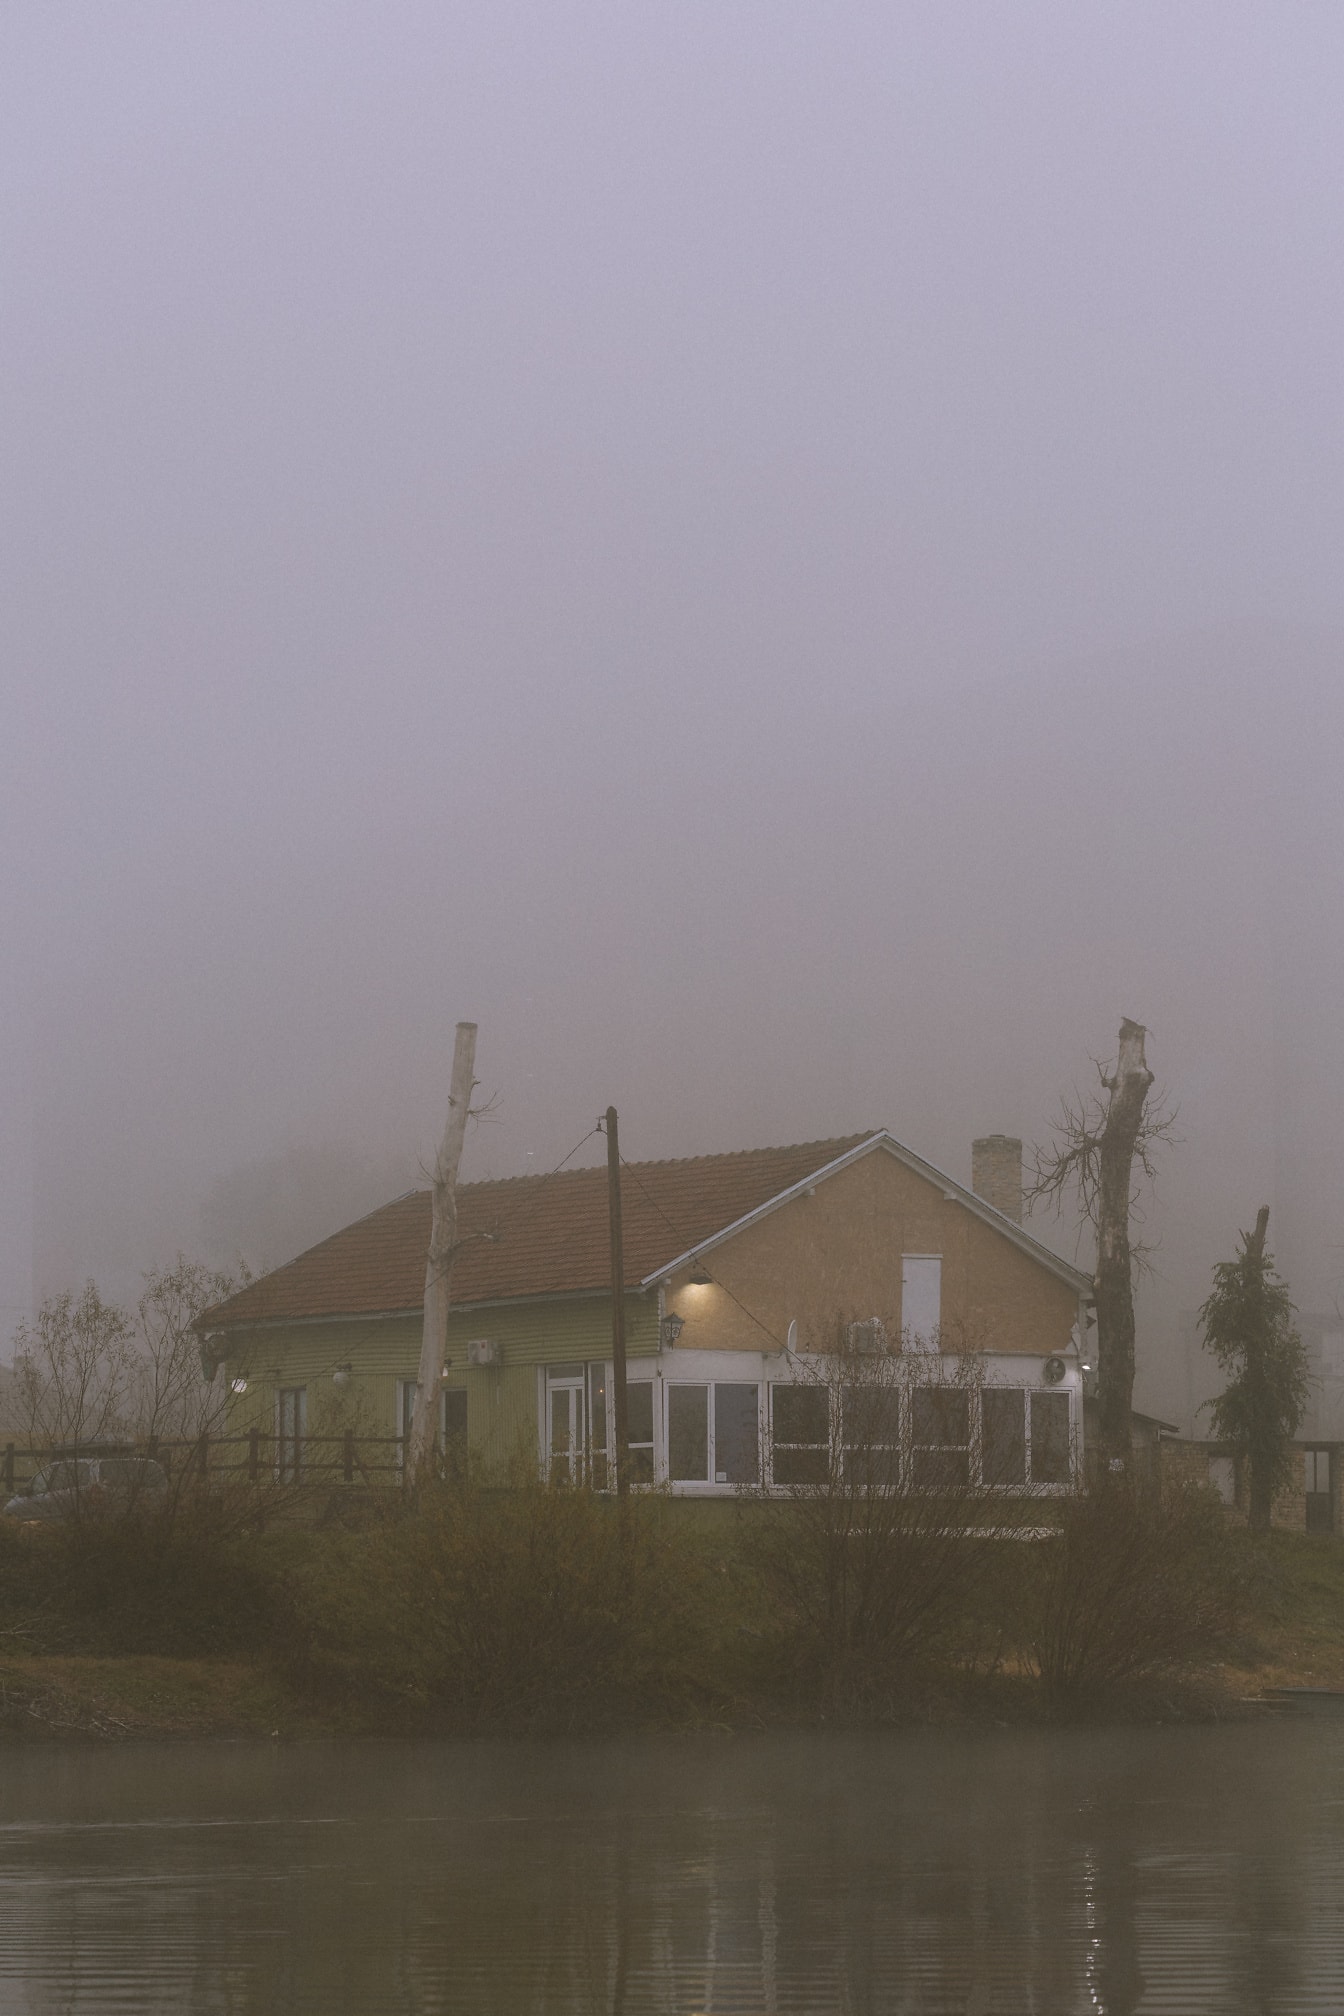 Σπίτι σε πυκνή ομίχλη με δέντρα στο βάθος